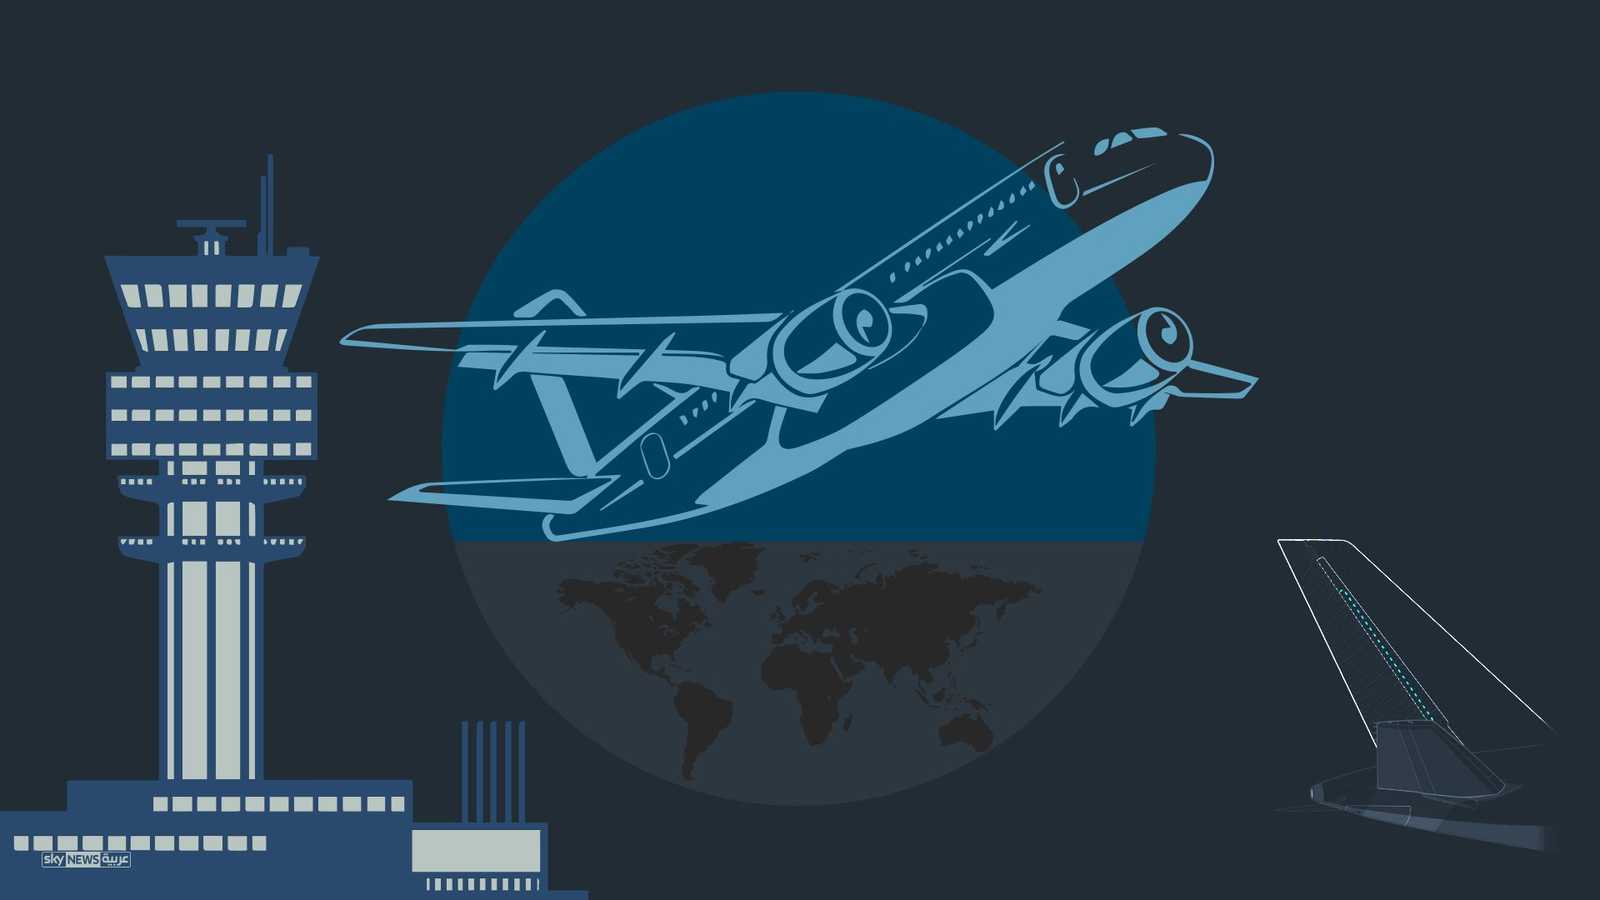 رقم قياسي لحركة النقل الجوي العالمية